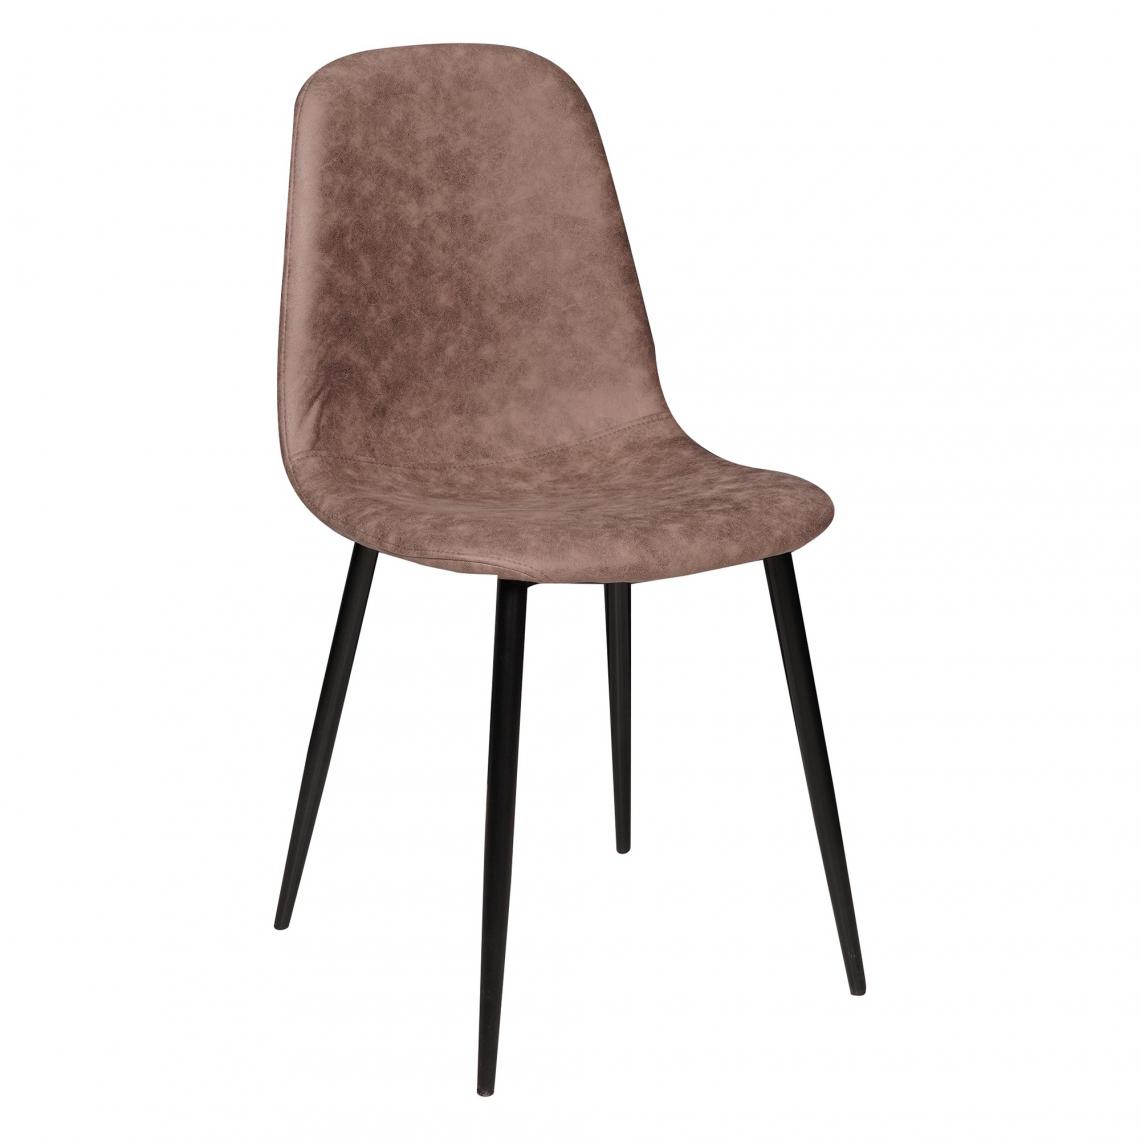 Alter - Chaise élégante en éco-cuir rembourrée avec pieds en métal, Fauteuil pour salle à manger, 56x45h87 cm, Couleur marron - Chaises